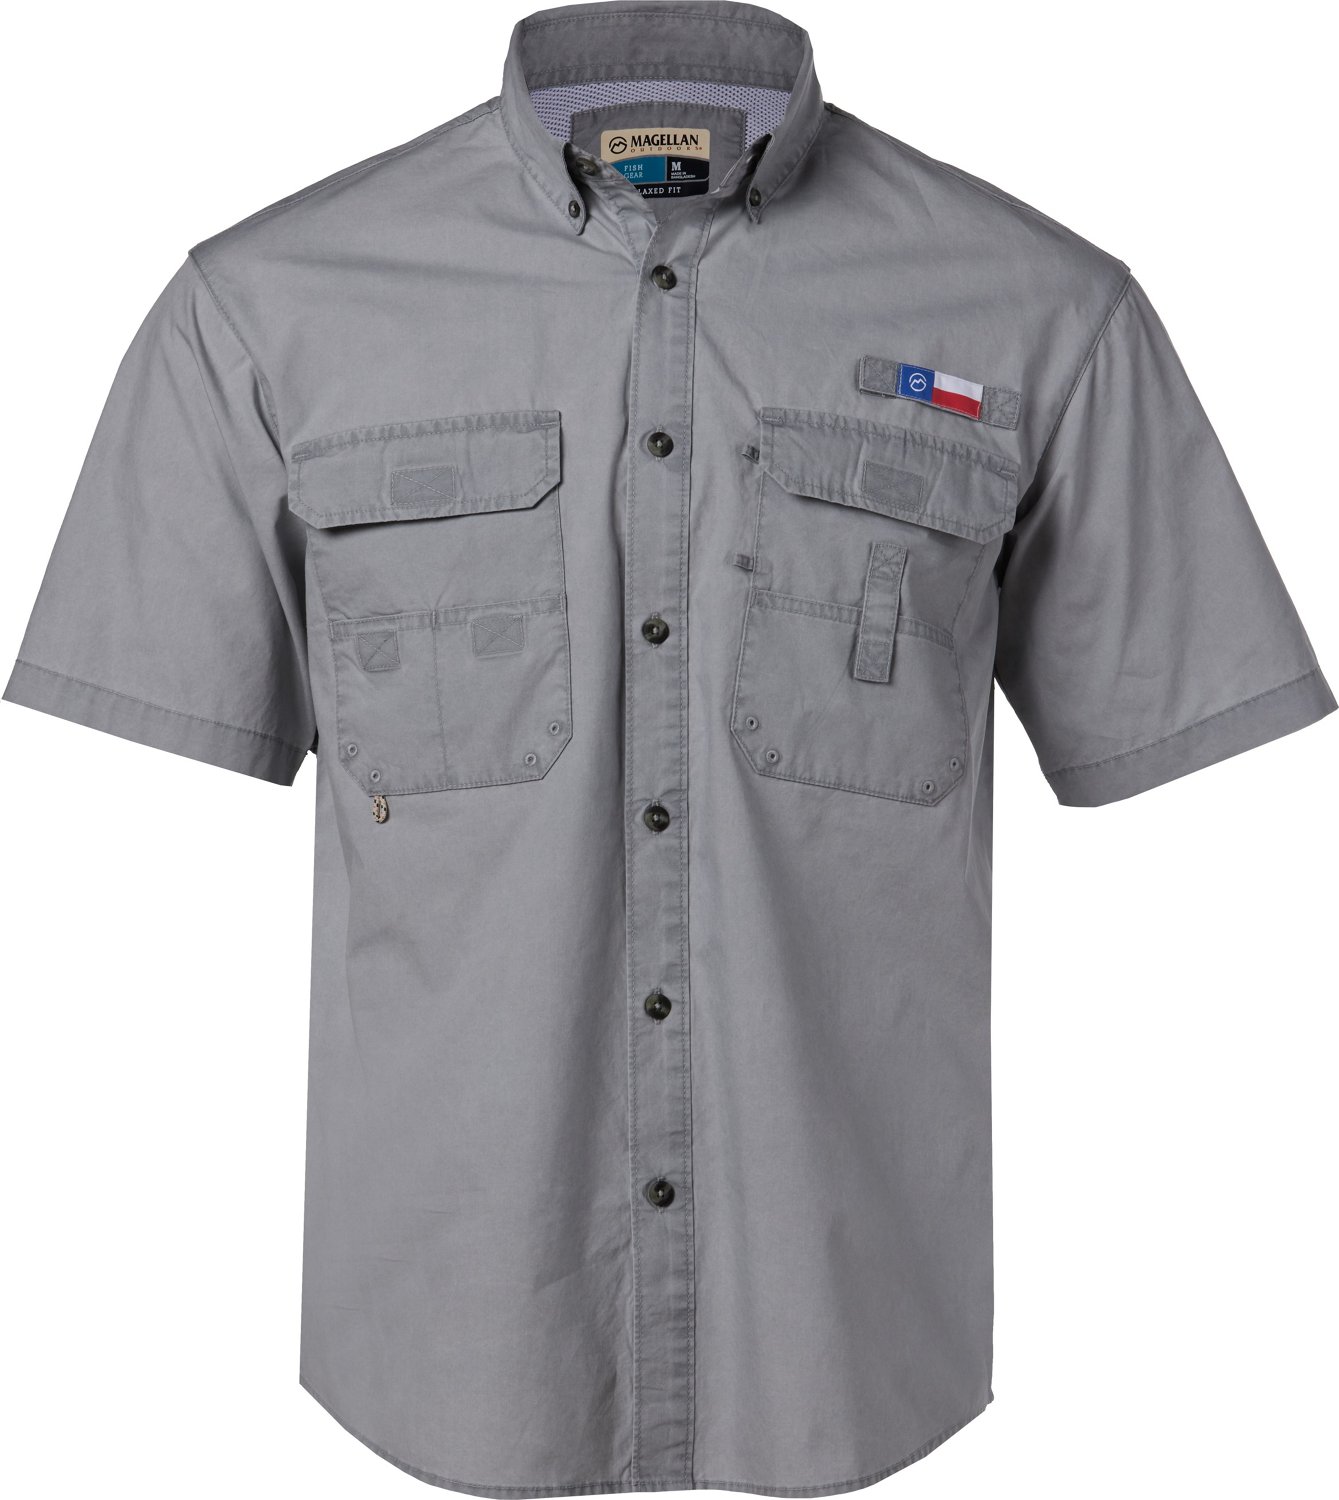 Magellan Shirt Men's XL Grey Solid Short Sleeve Outdoor Fishing Fish Logo